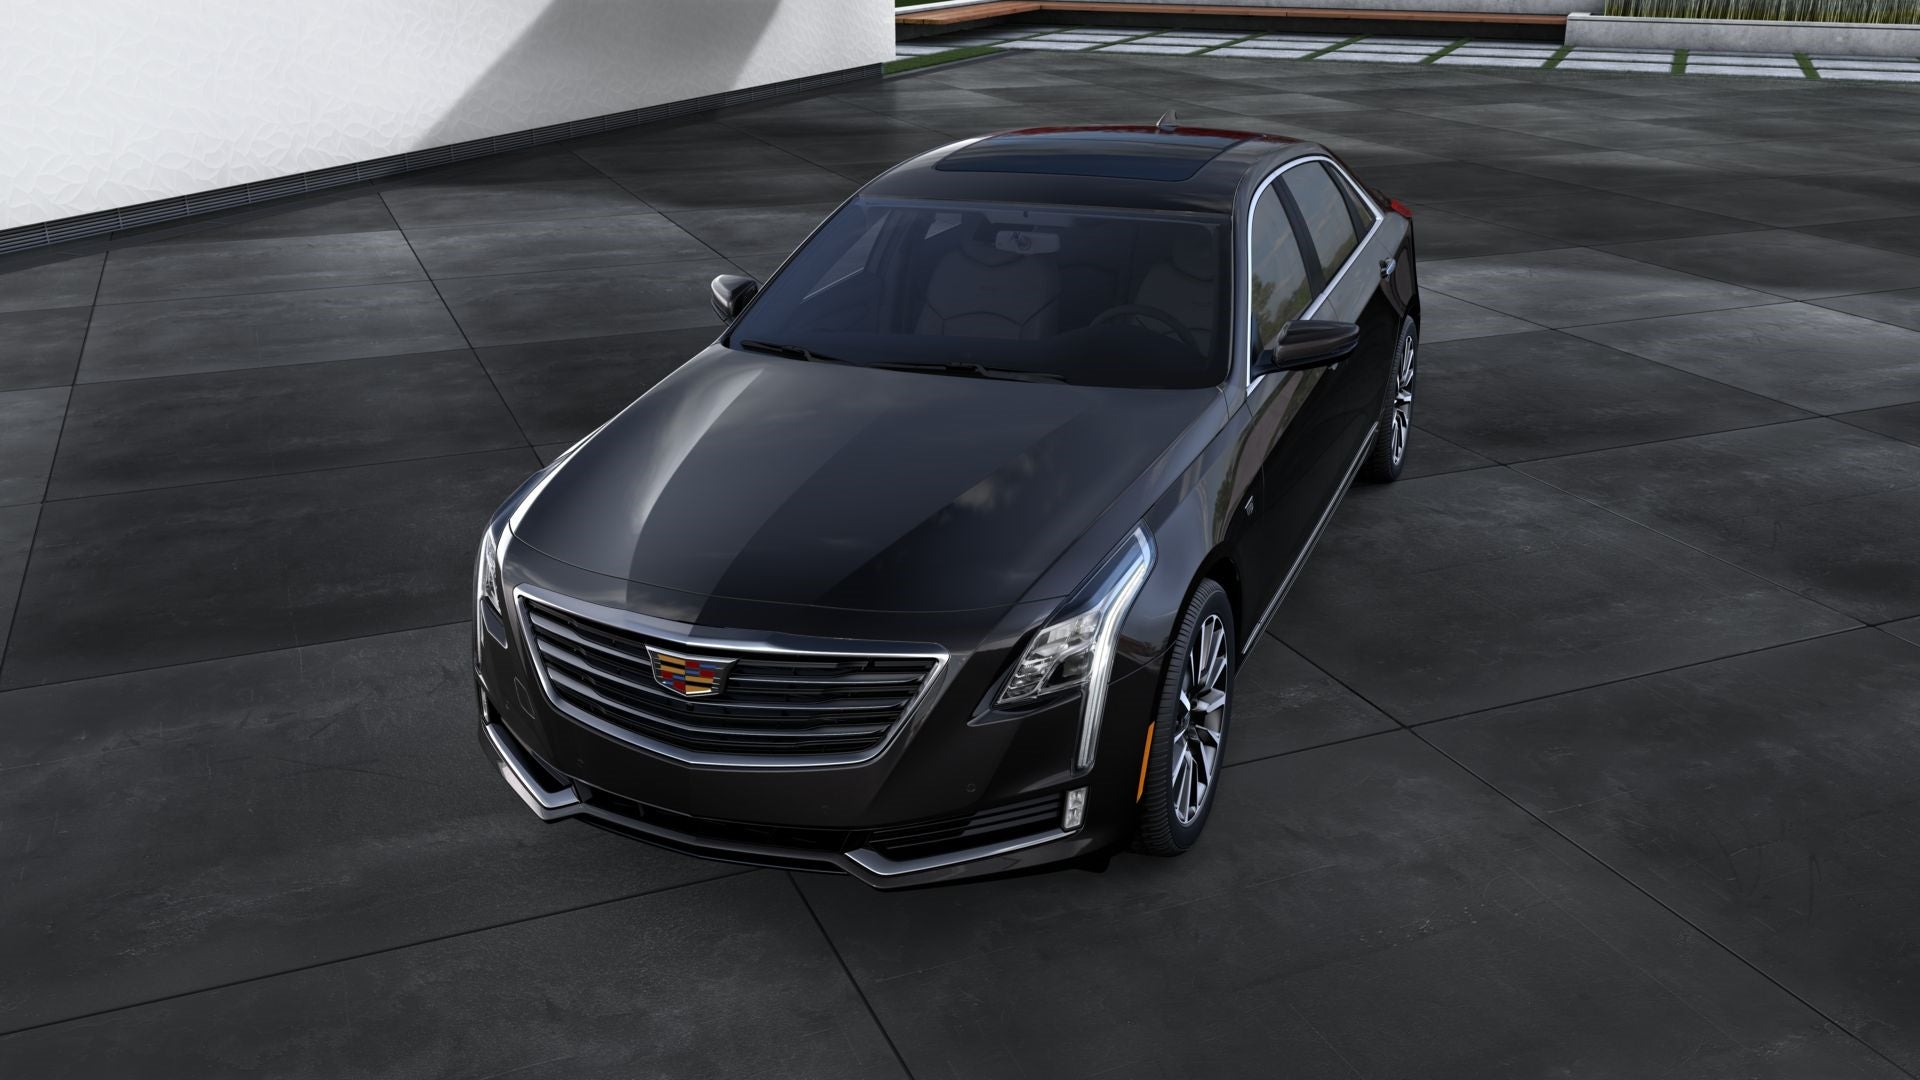 2016 Cadillac CT6 Premium Luxury AWD